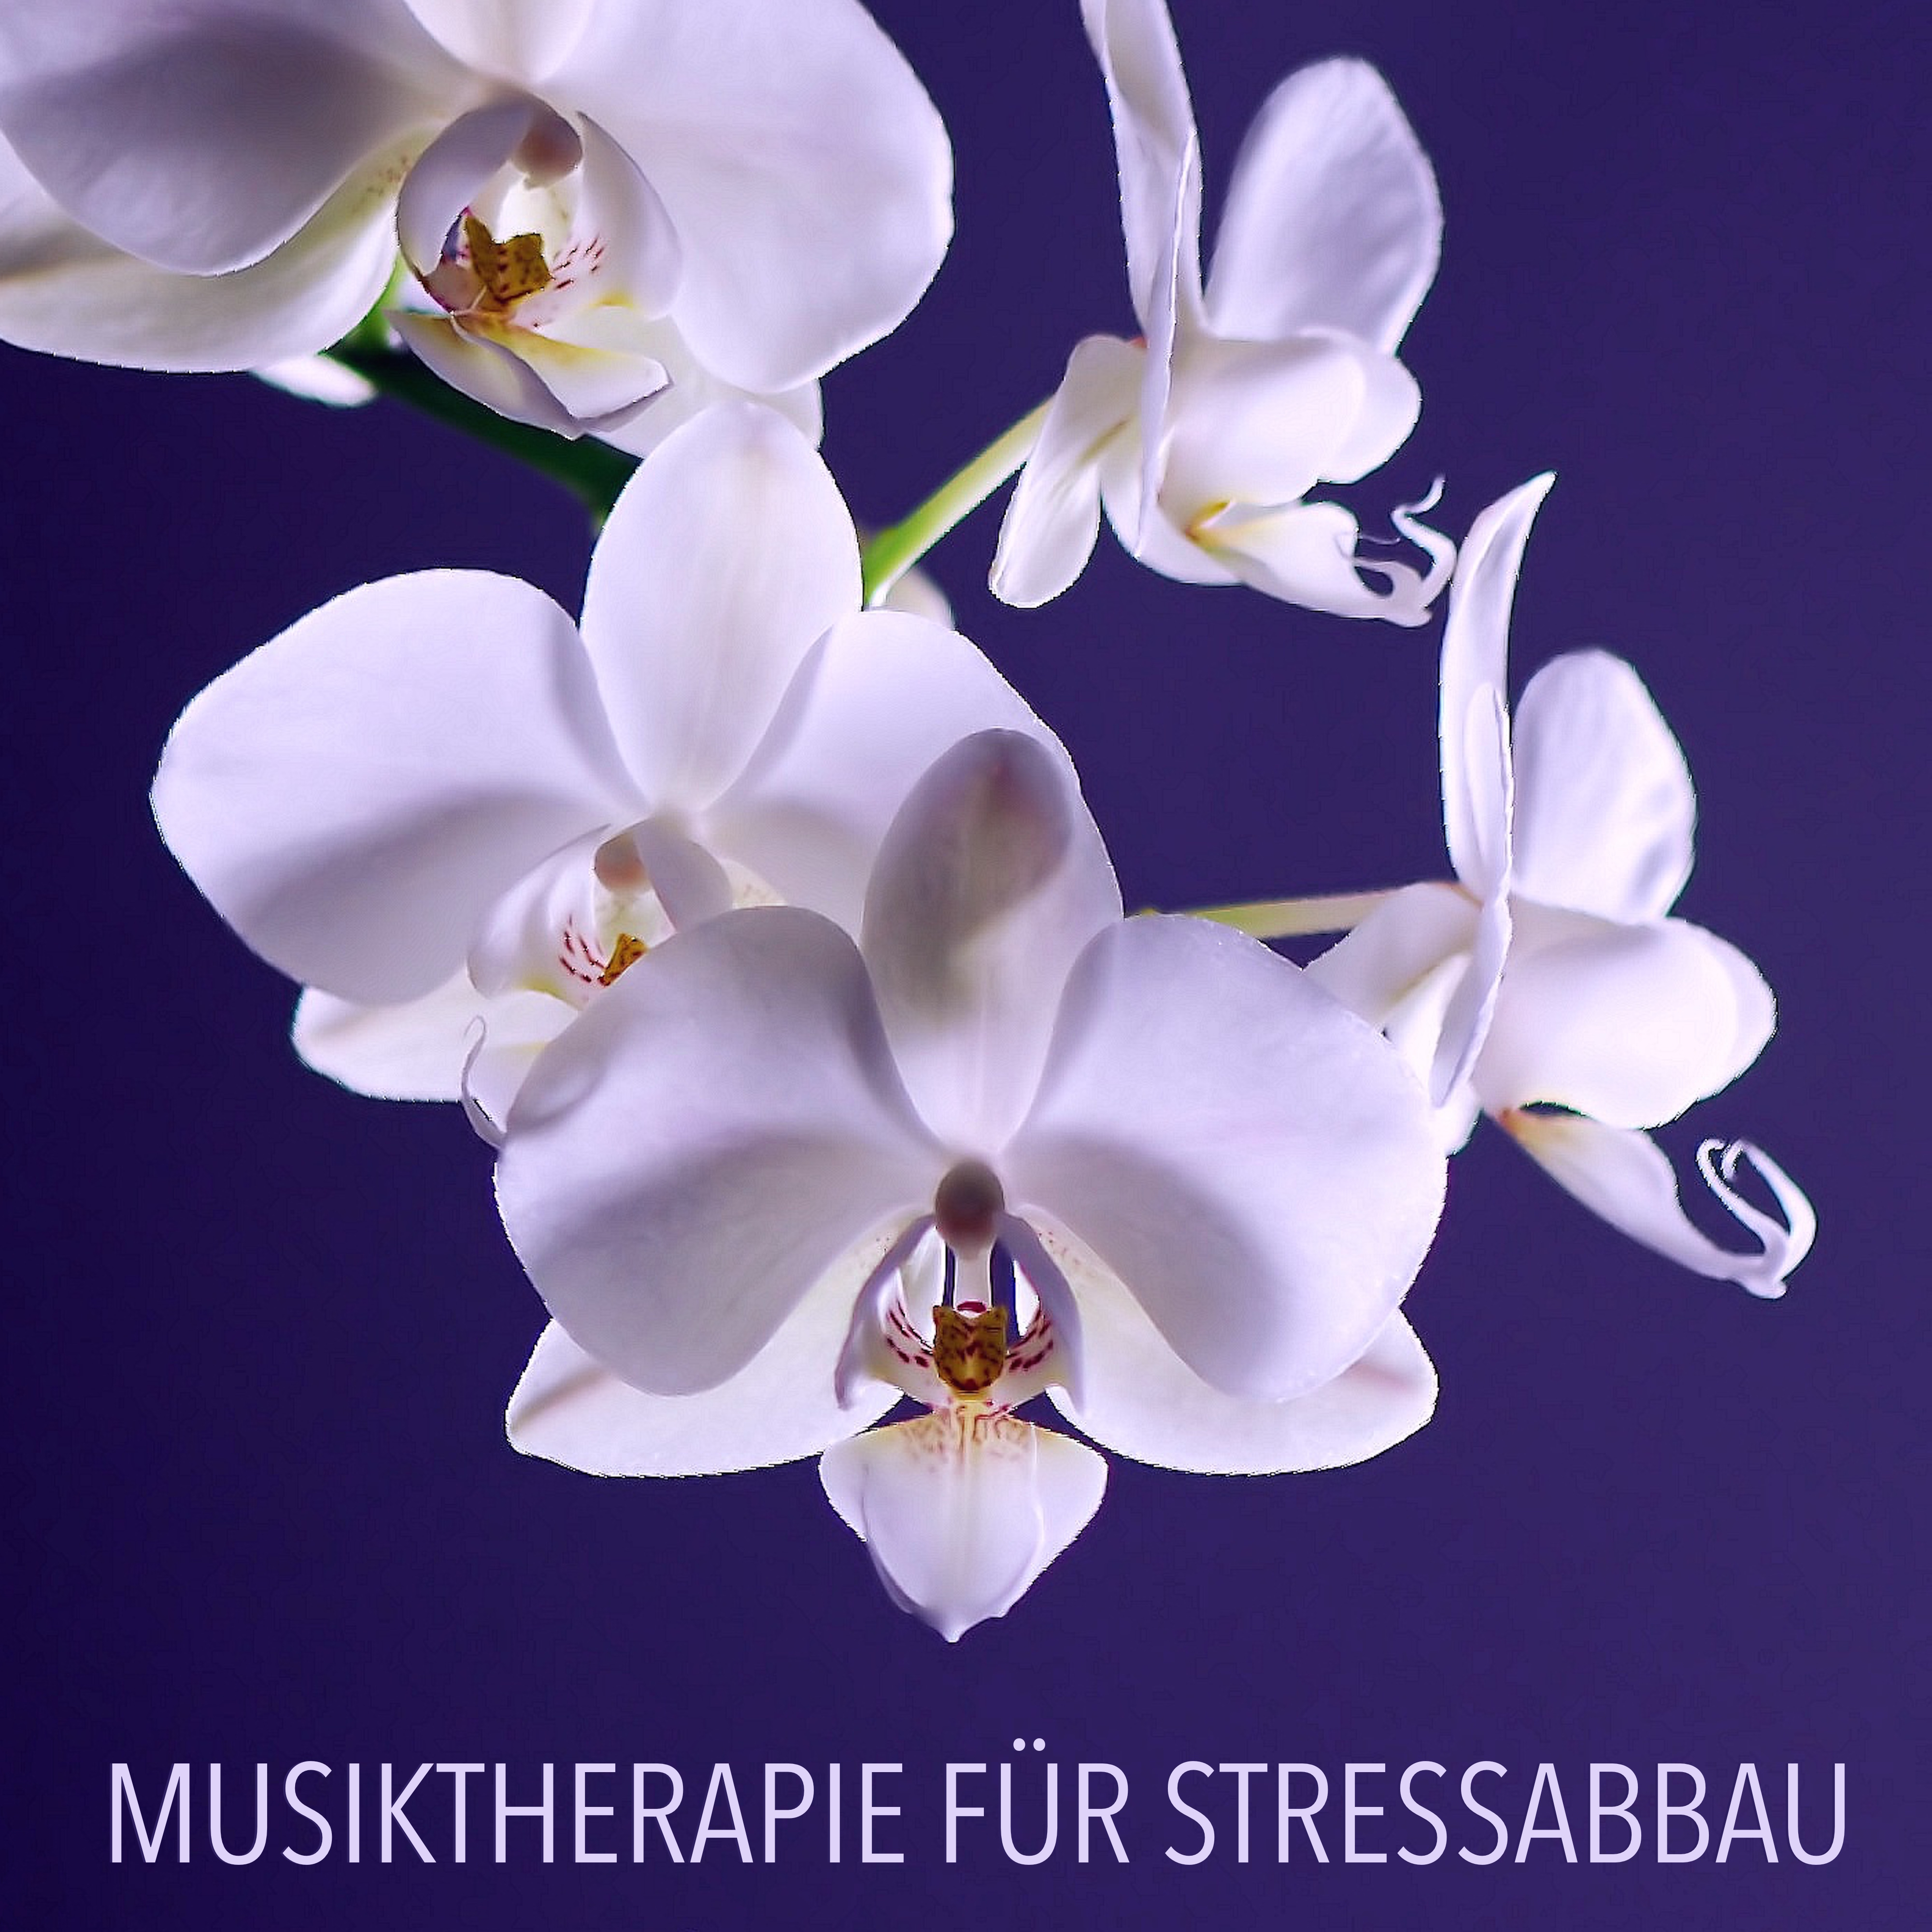 Musiktherapie für Stressabbau - Eine Sammlung der Besten Zen Meditationsmusik und Tiefenentspannungsmusik für Massage und Gesunden Schlaf